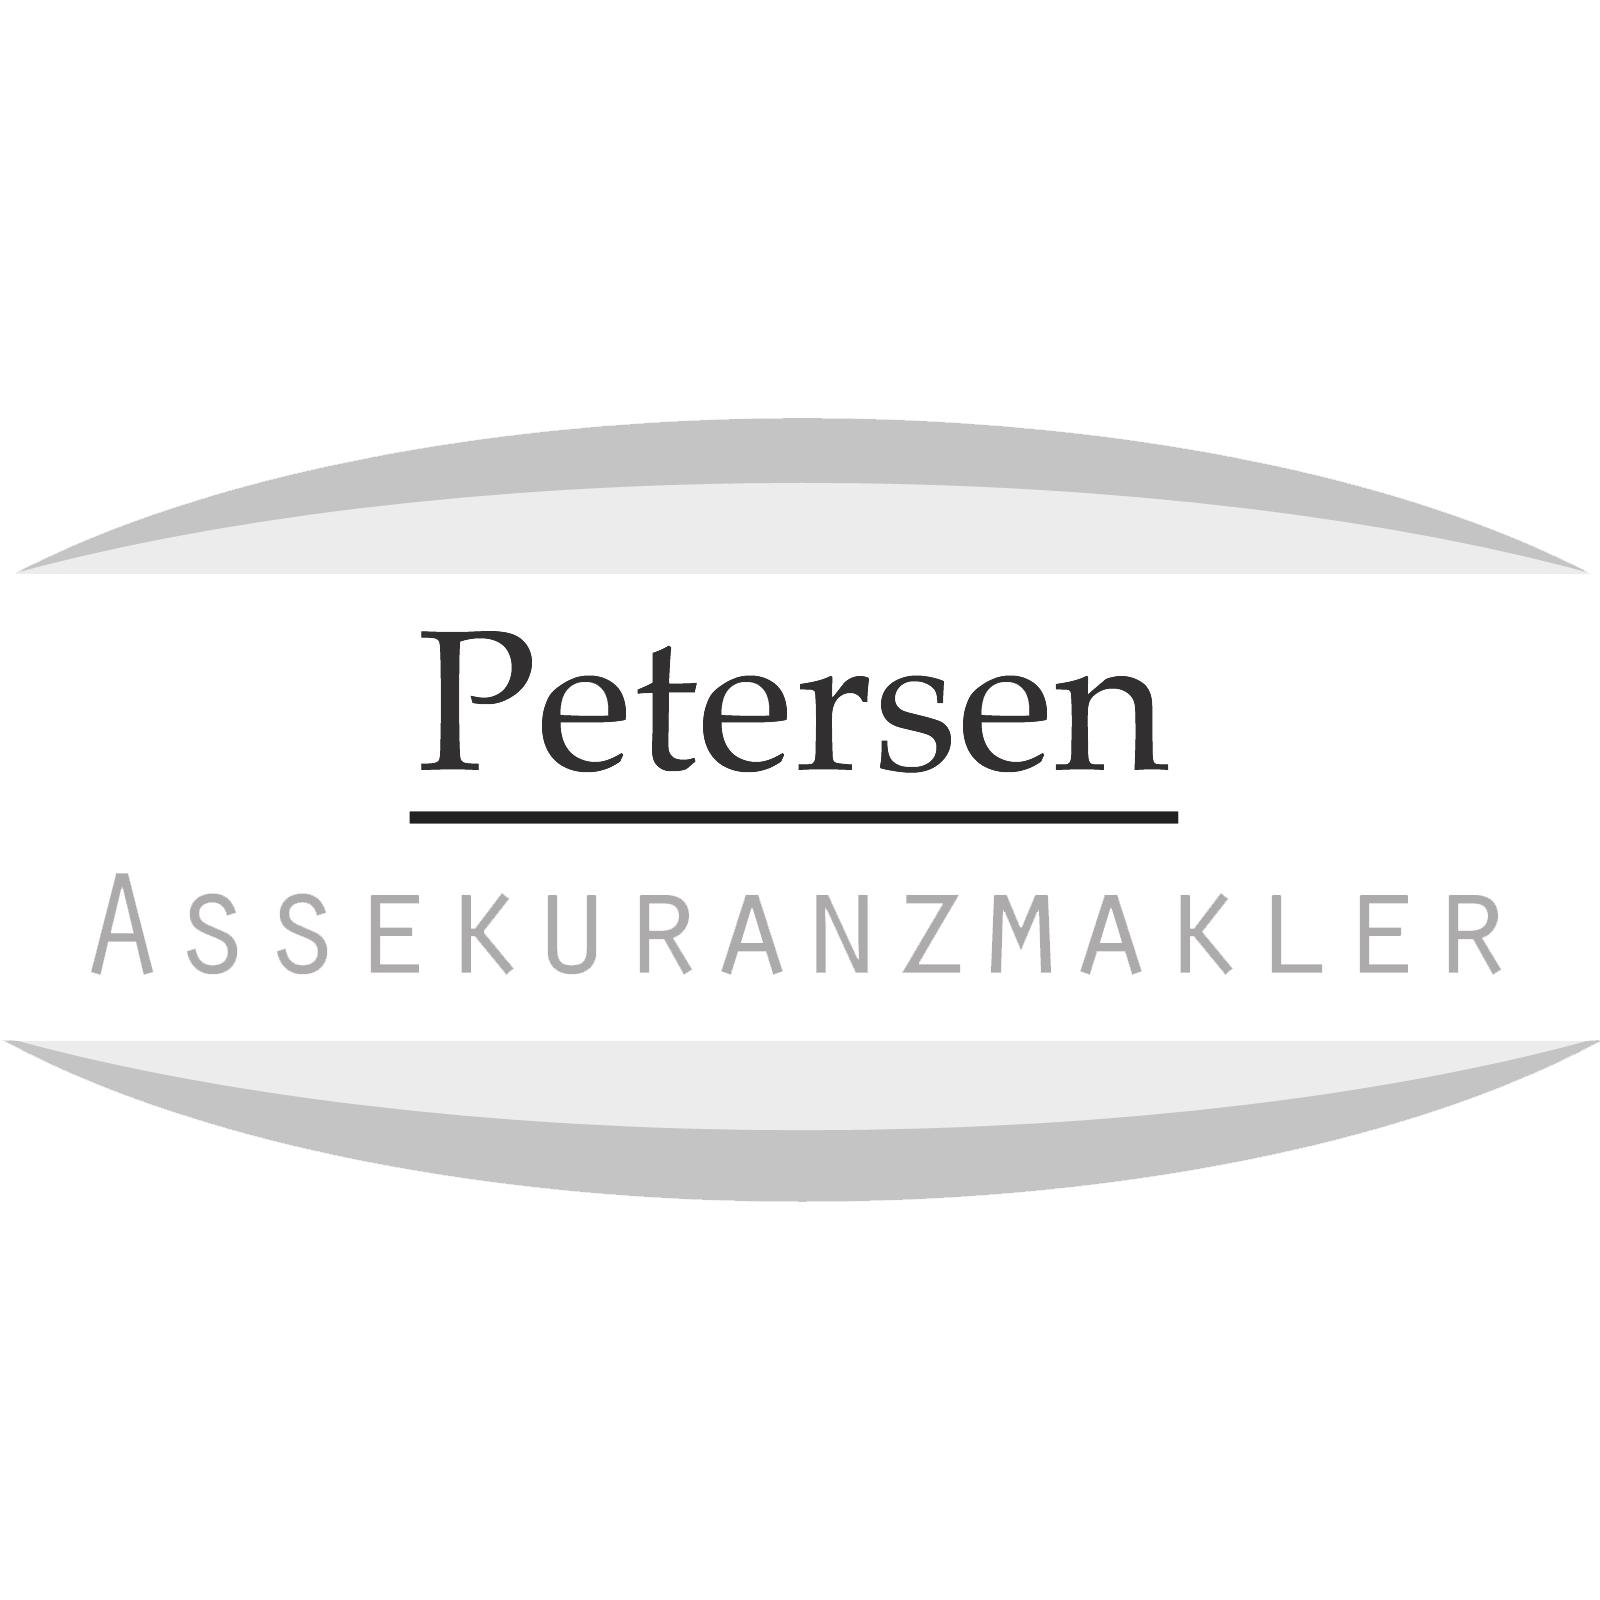 Petersen Assekuranzmakler in Kempen